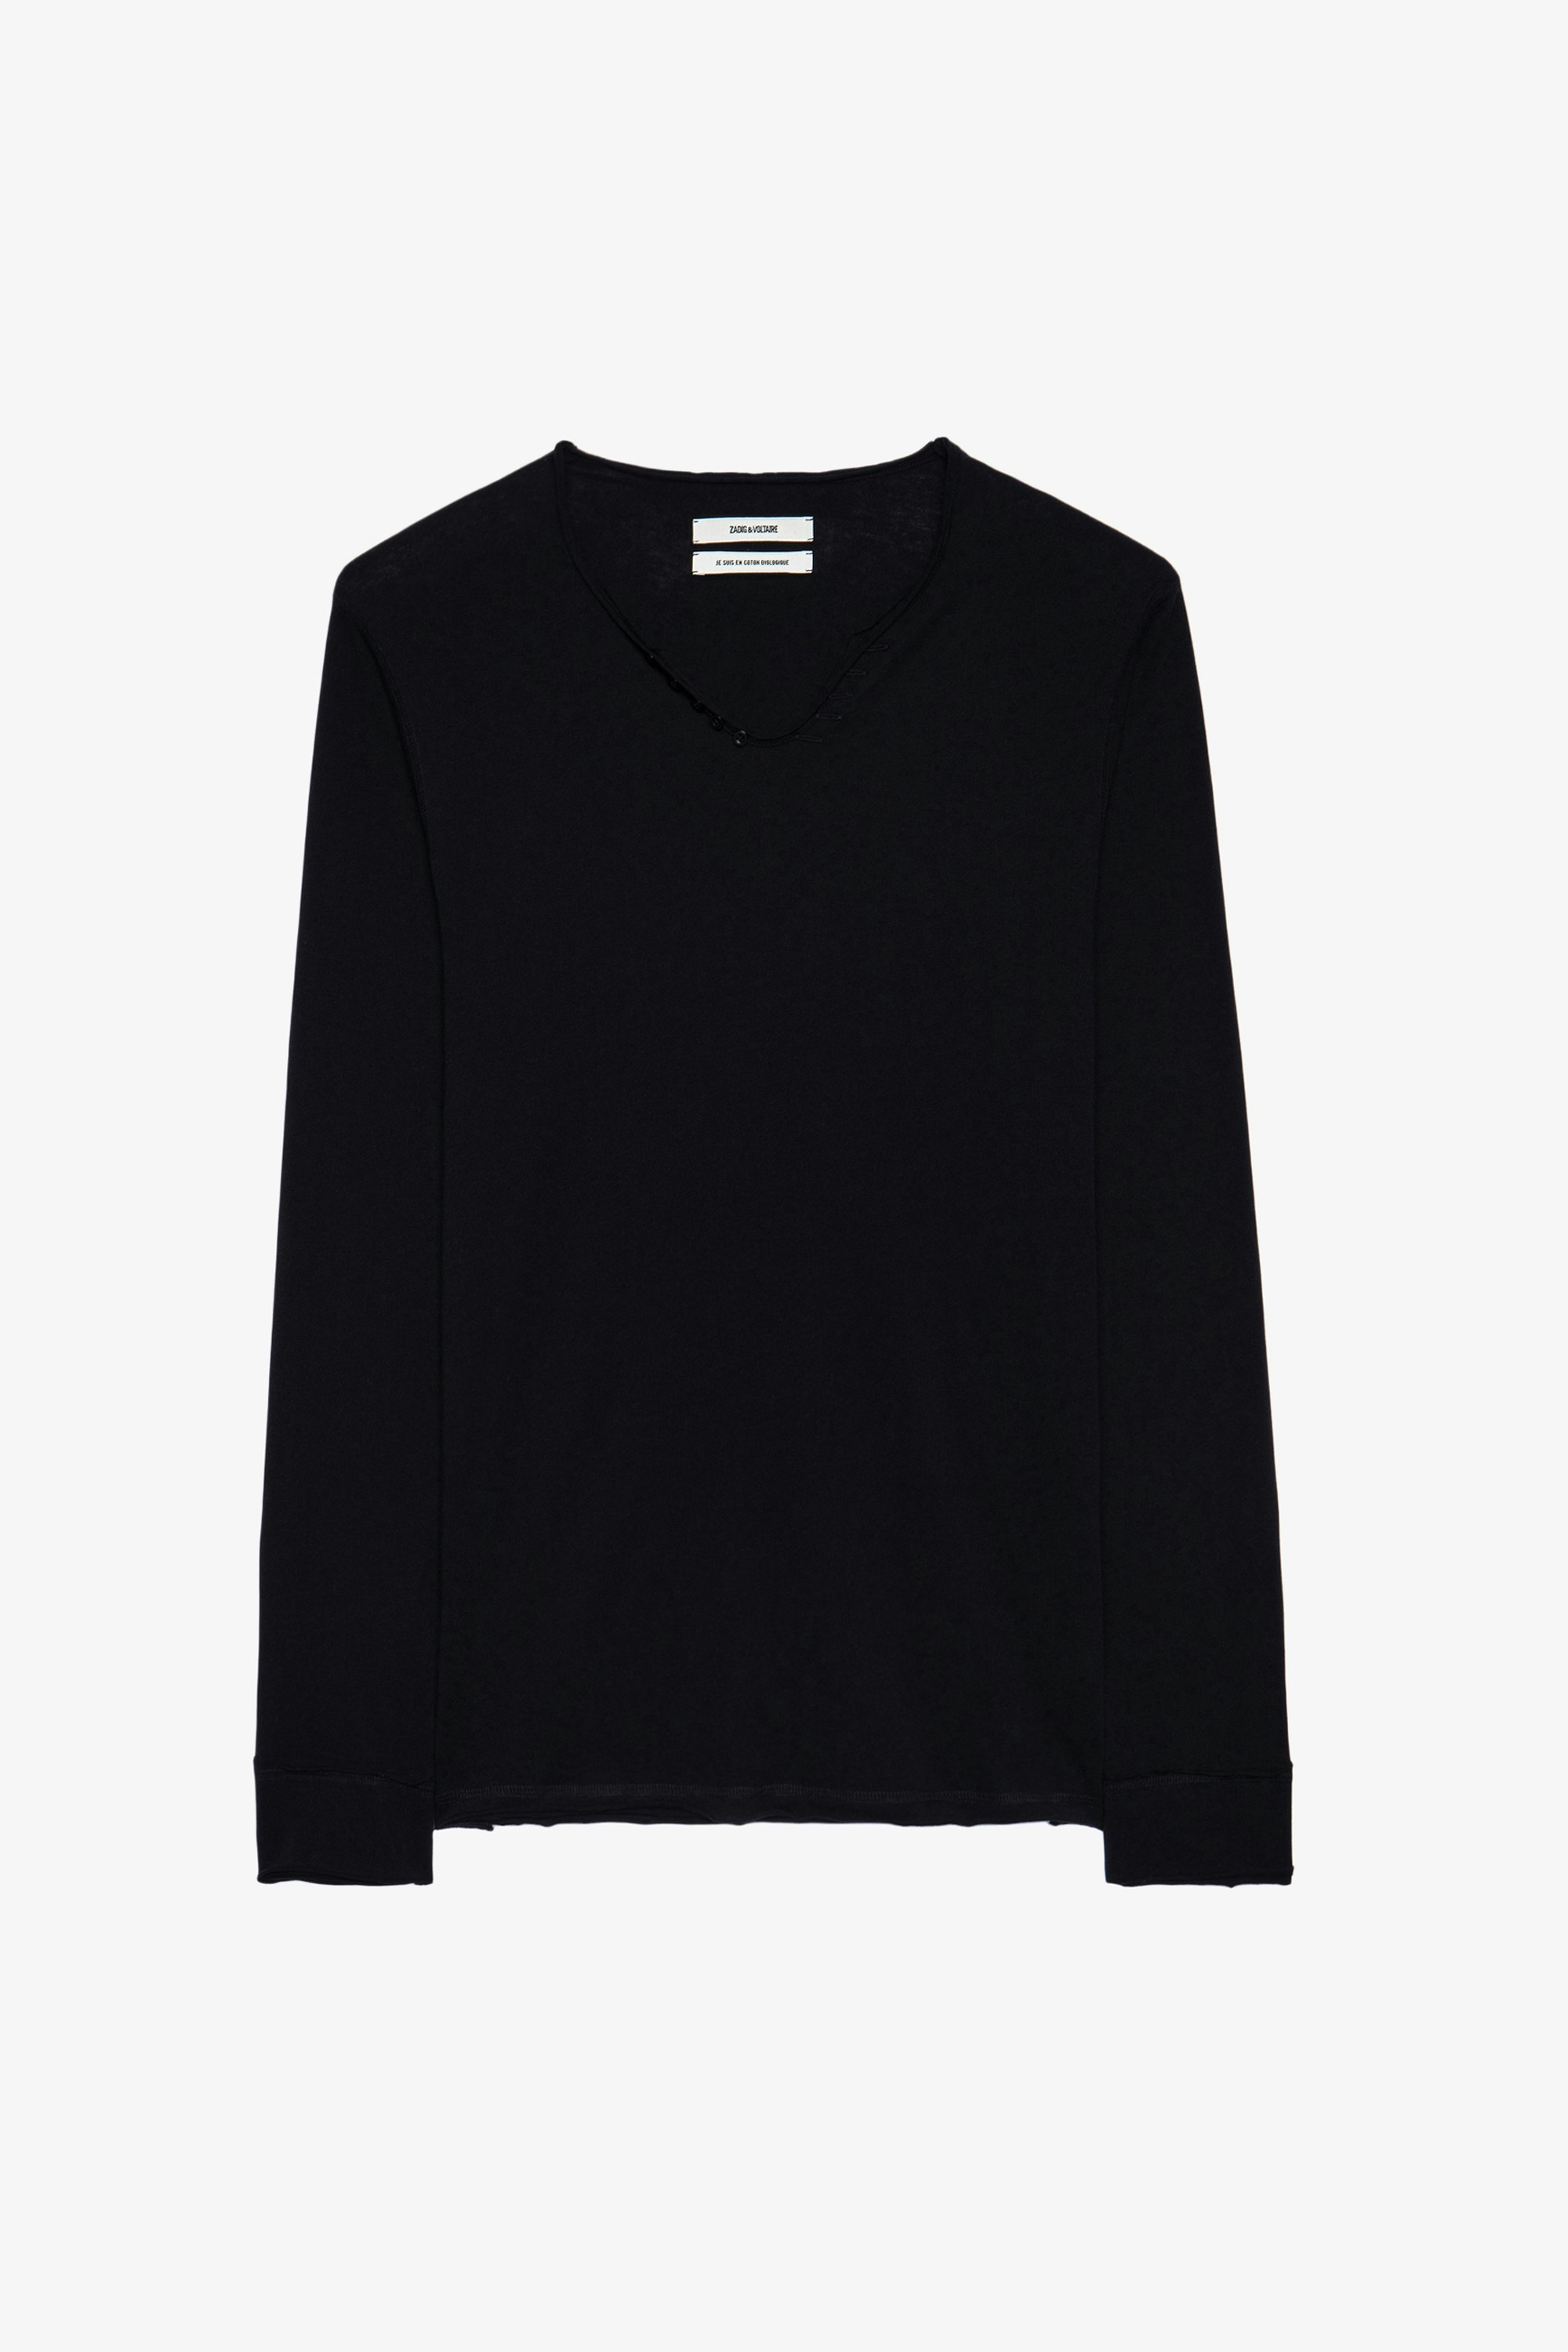 Camiseta Monastir Camiseta negra para con cuello tunecino de algodón